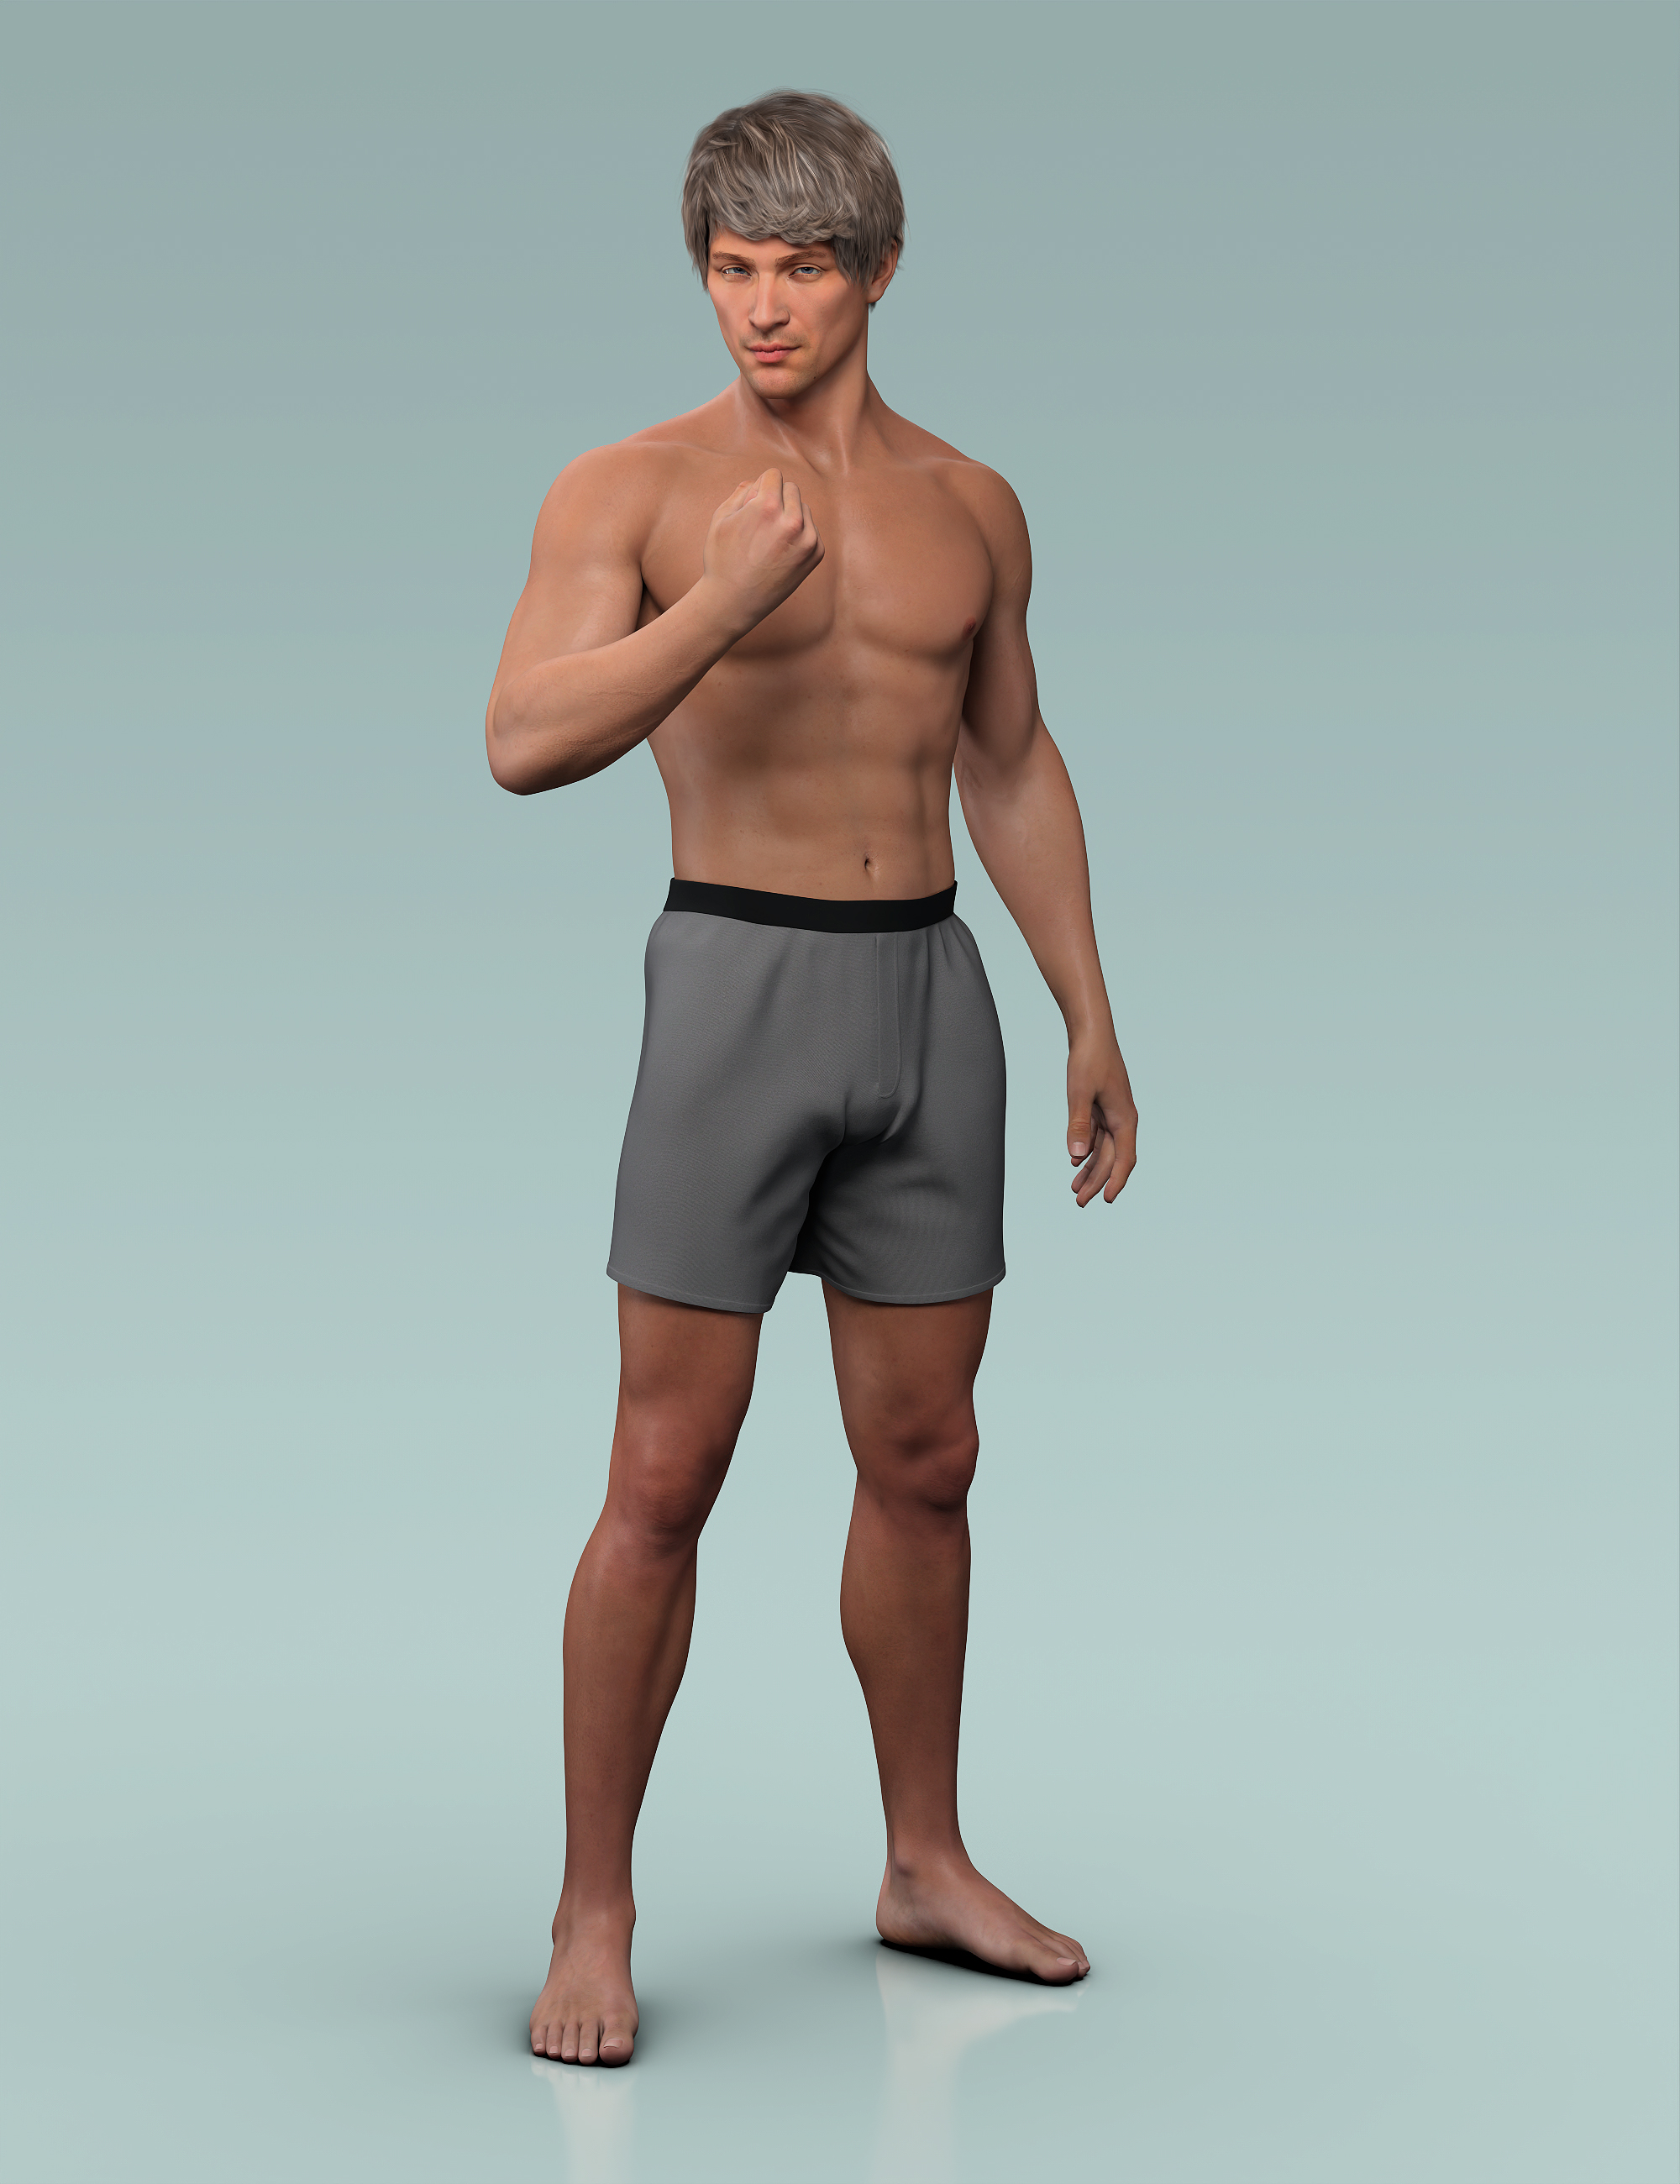 Kaman HD for Genesis 8.1 Male by: Goanna, 3D Models by Daz 3D